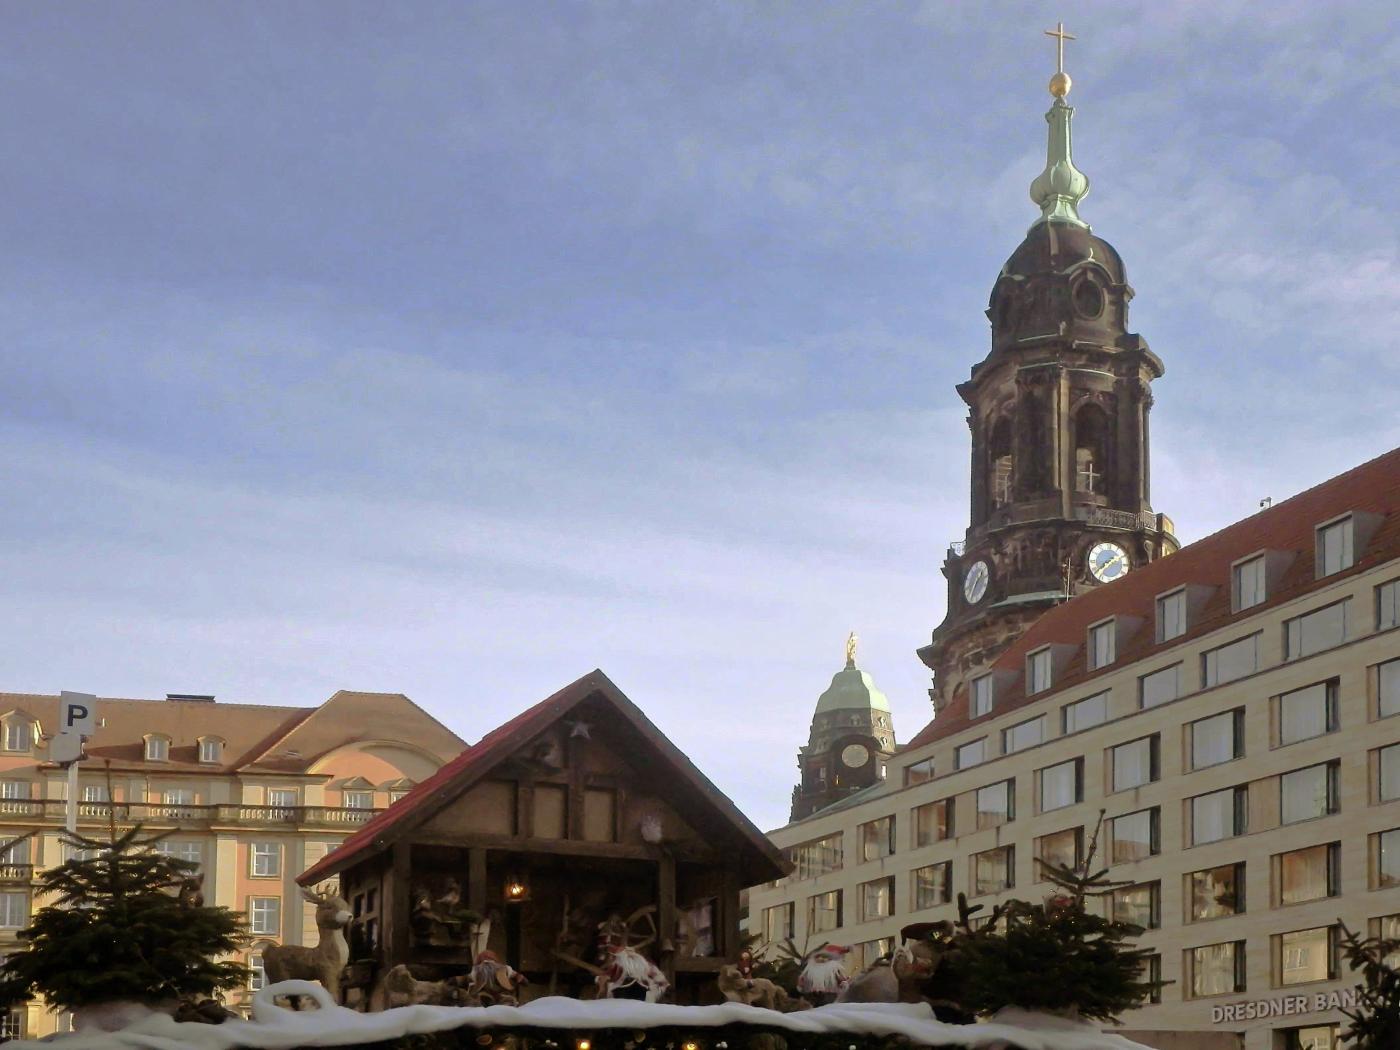 Striezelmarkt und Kreuzkirche